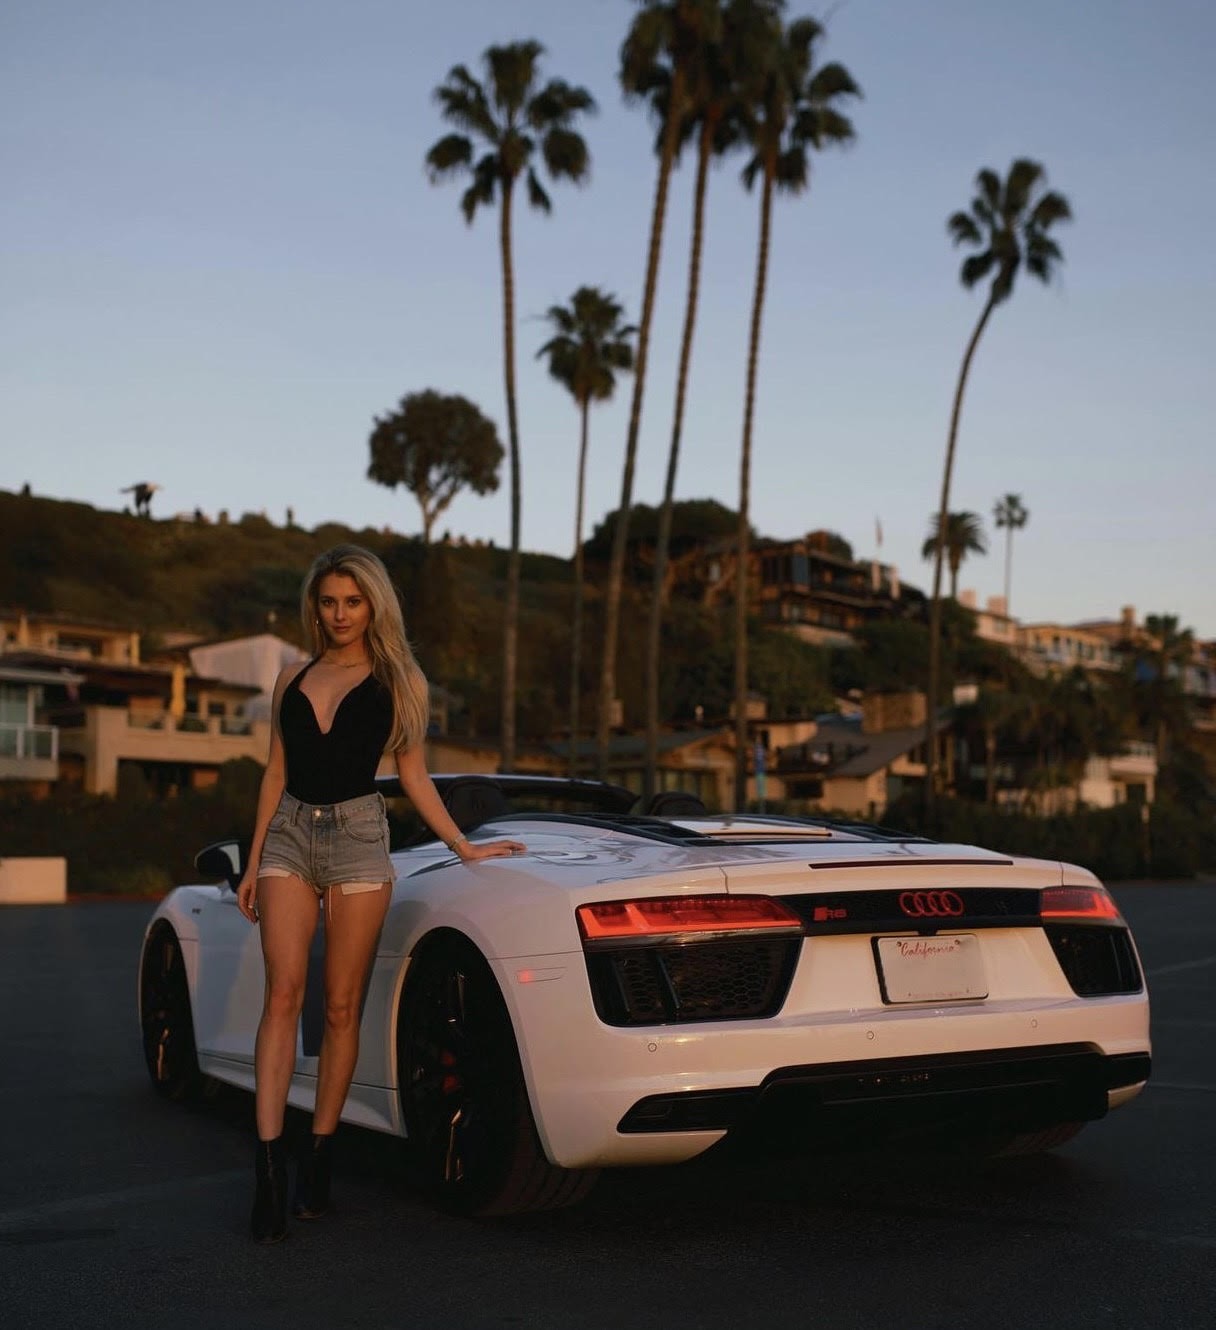 
Chiếc Audi R8 ưa thích của Lindsay
